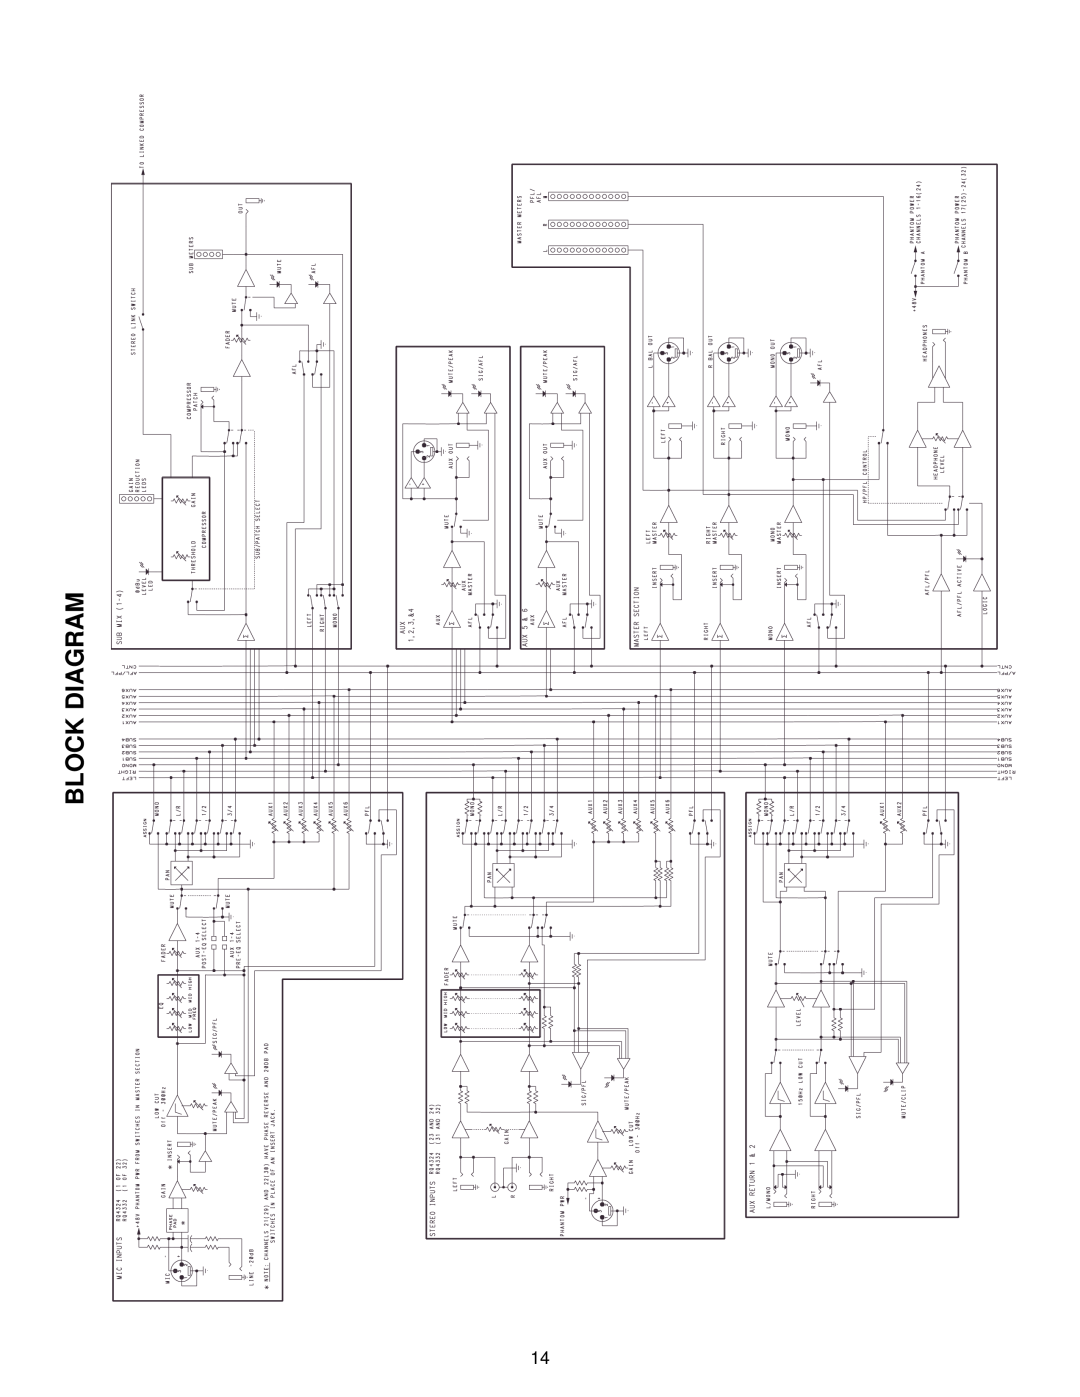 Peavey RQ 4300 Series manual Block Diagram 